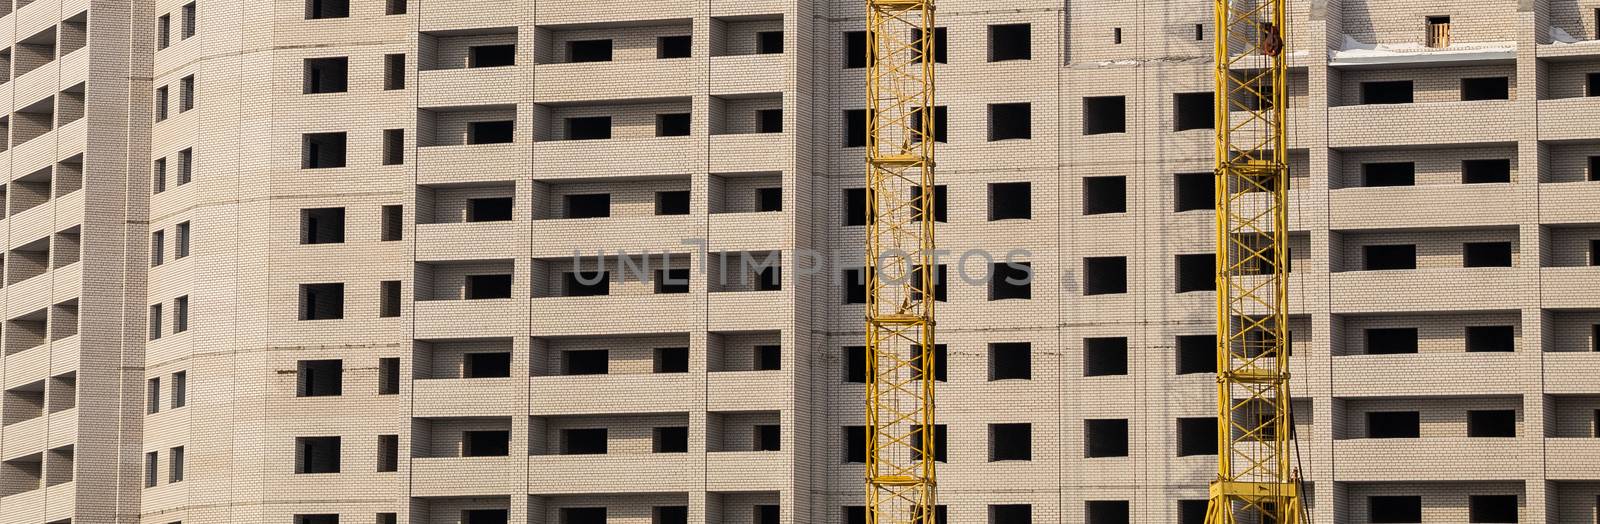 Construction site. Apartment building and cranes by DamantisZ